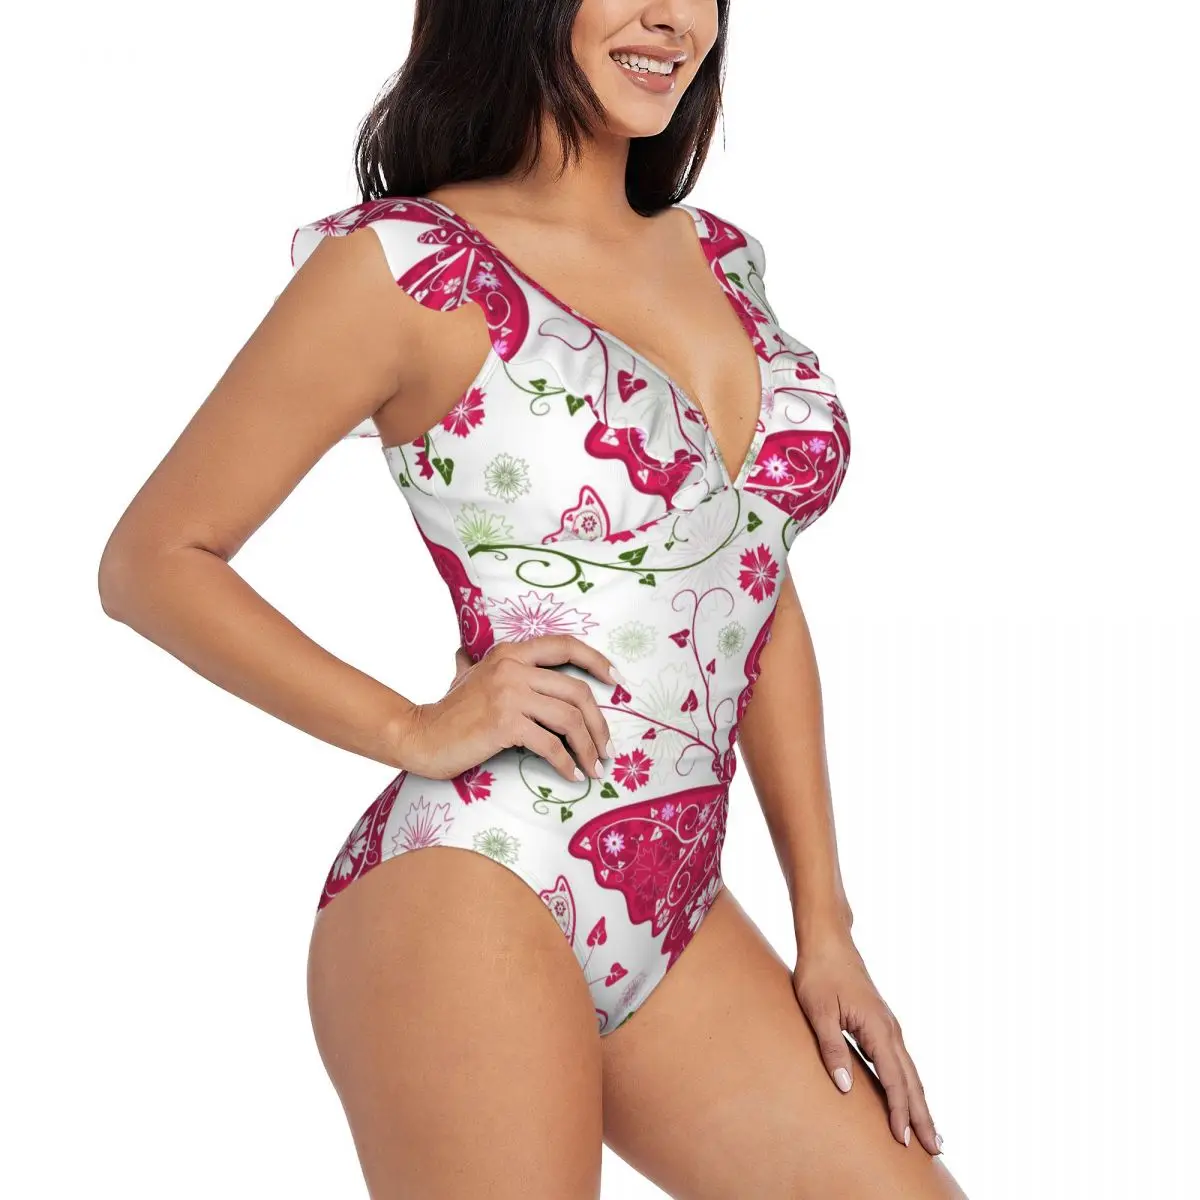 

Sexy One Piece Swimsuit Women Floral Pattern With Butterflies Ruffled Swimwear Monokini Female Bodysuit Girl Beach Bathing Suit